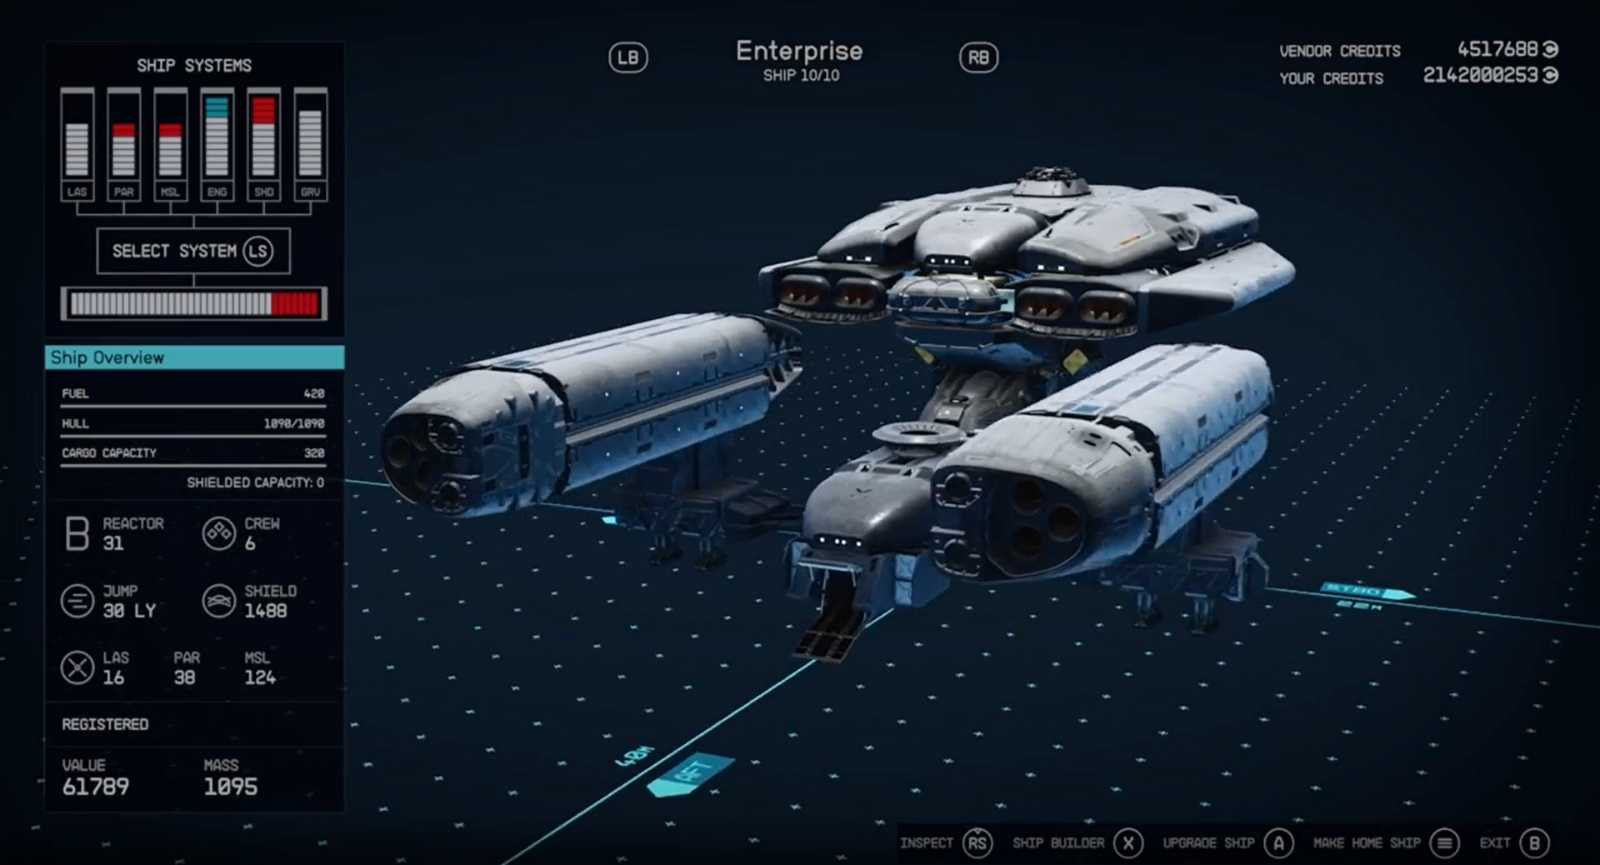 USS Enterprise recreated in Starfield